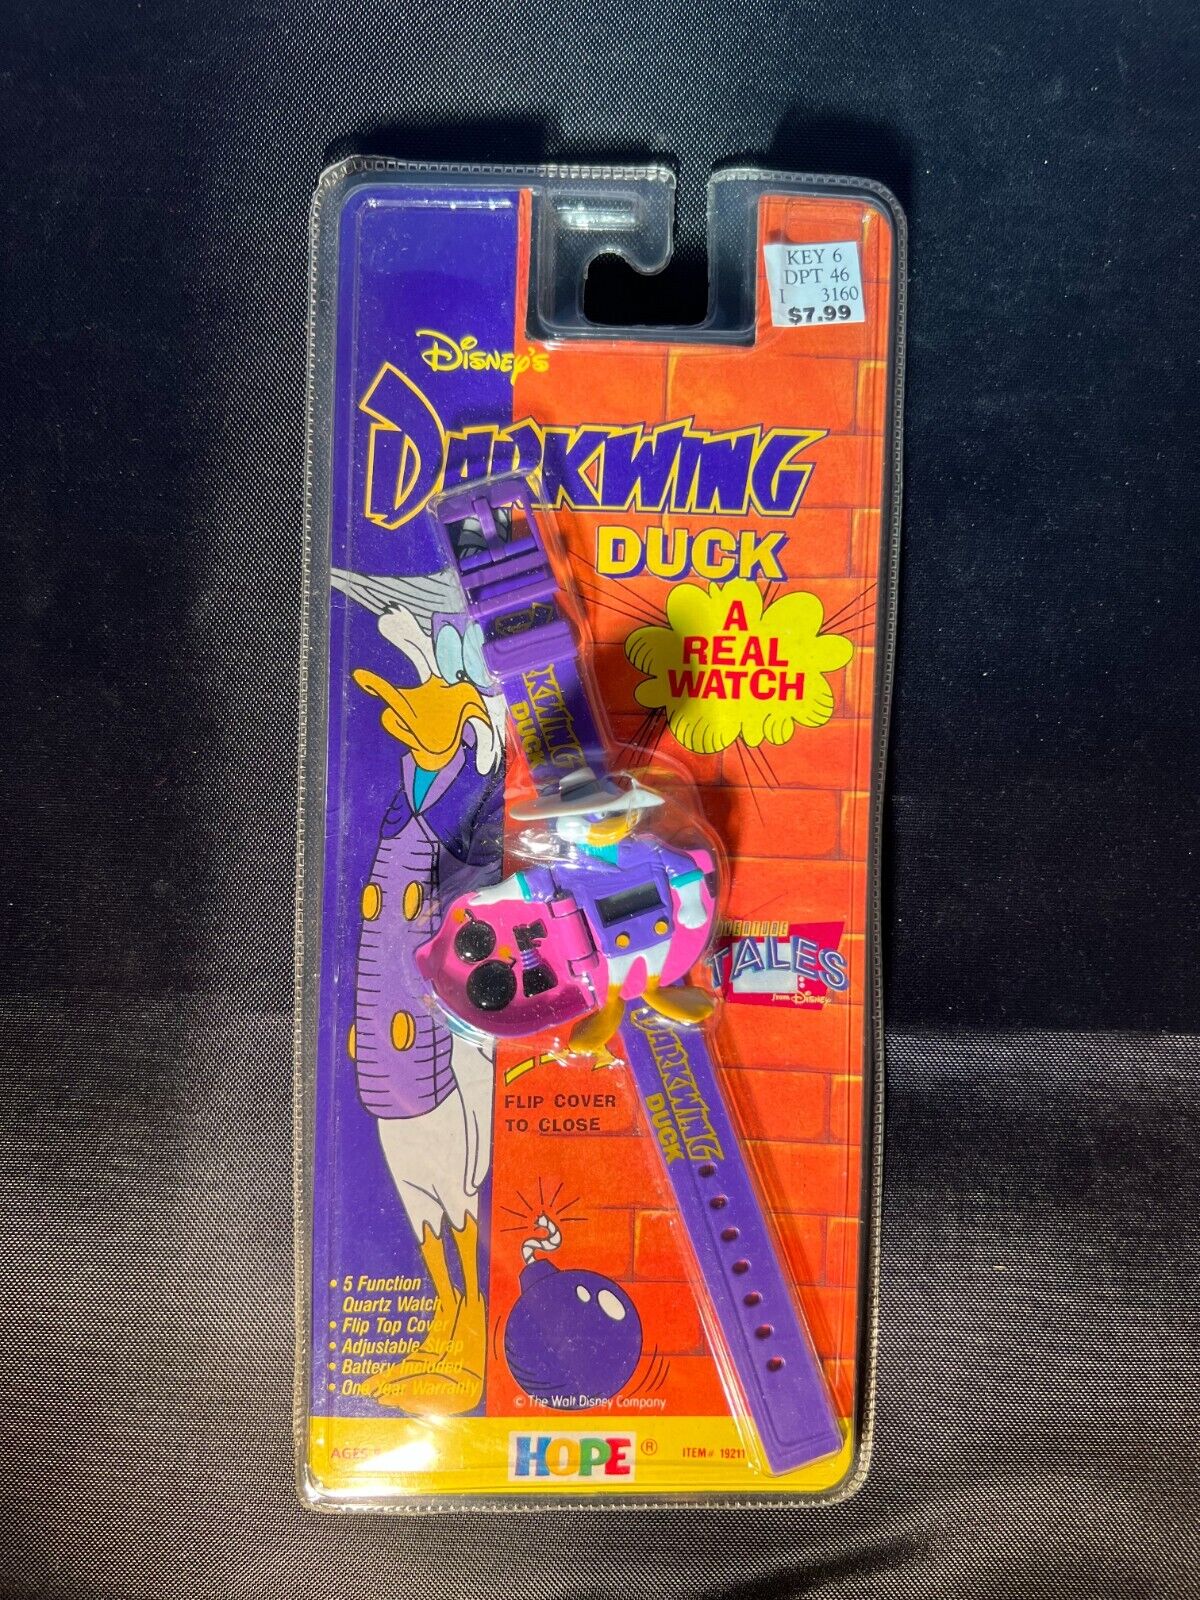 Walt Disney's Darkwing Duck Digital Watch 1991 Vintage by Hope NOS SEALED